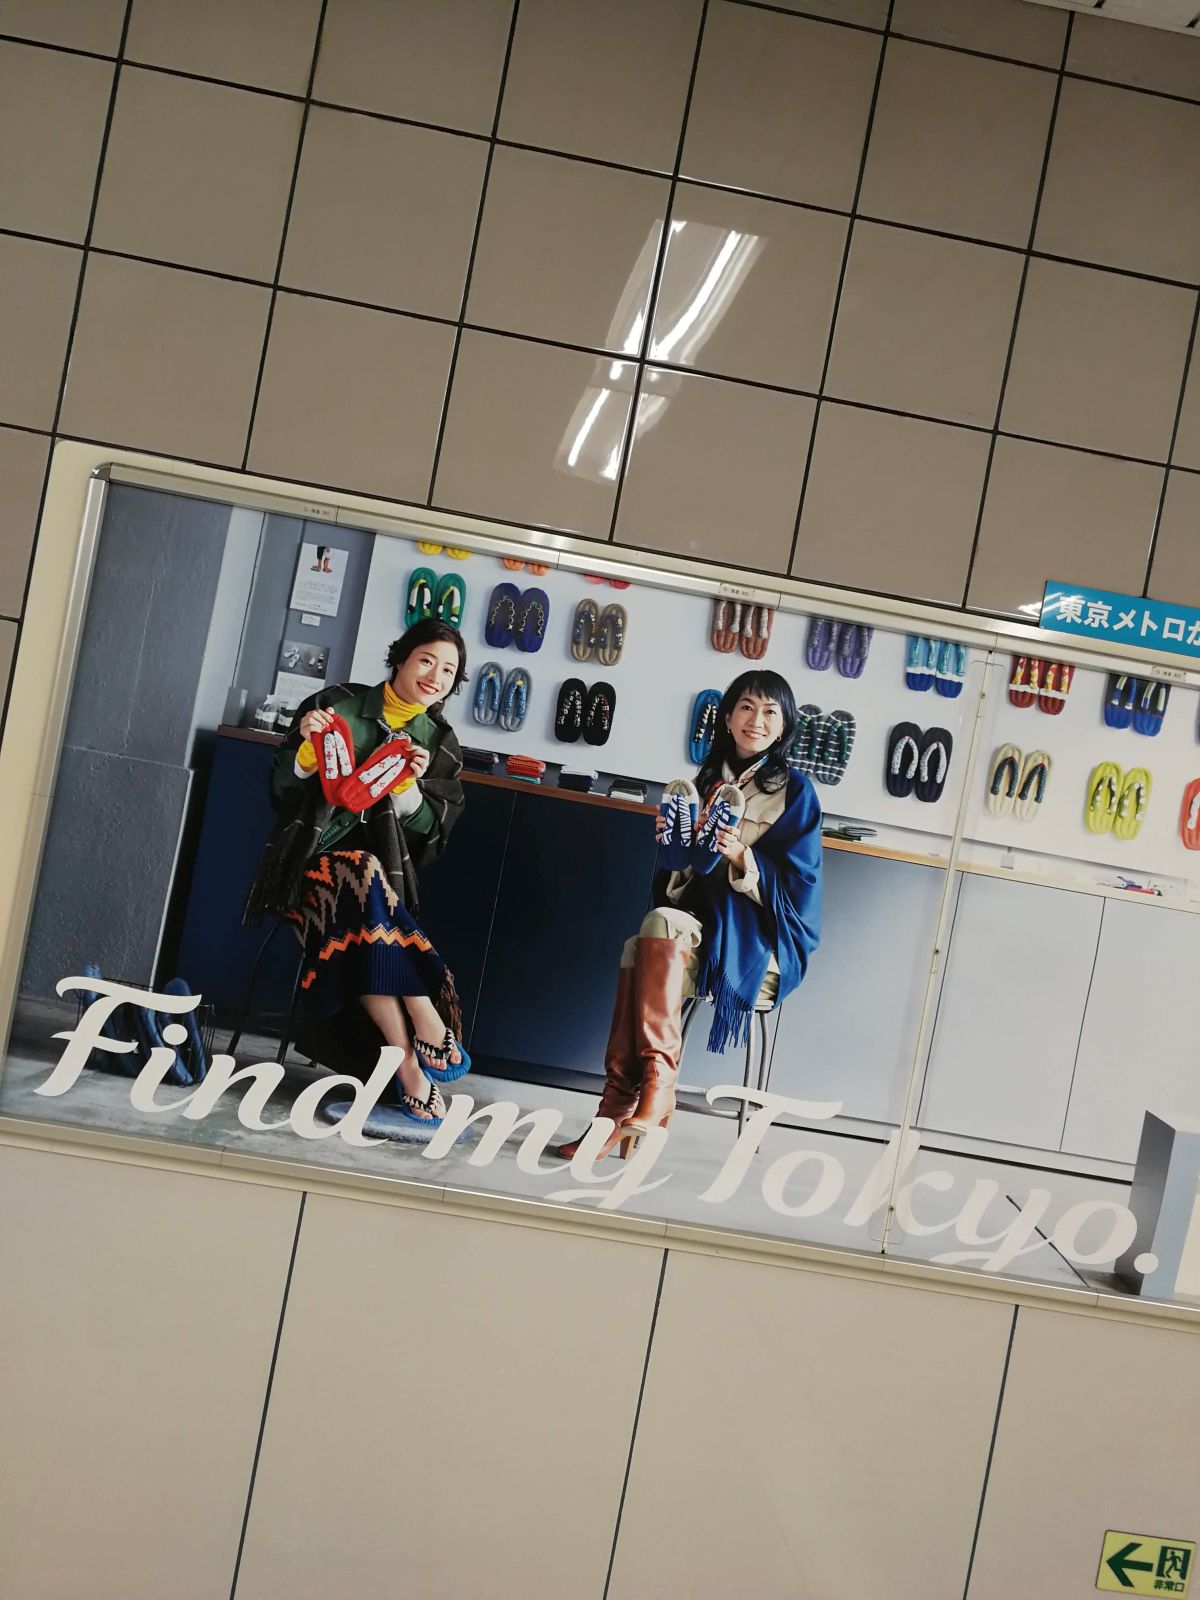 東京メトロの広告